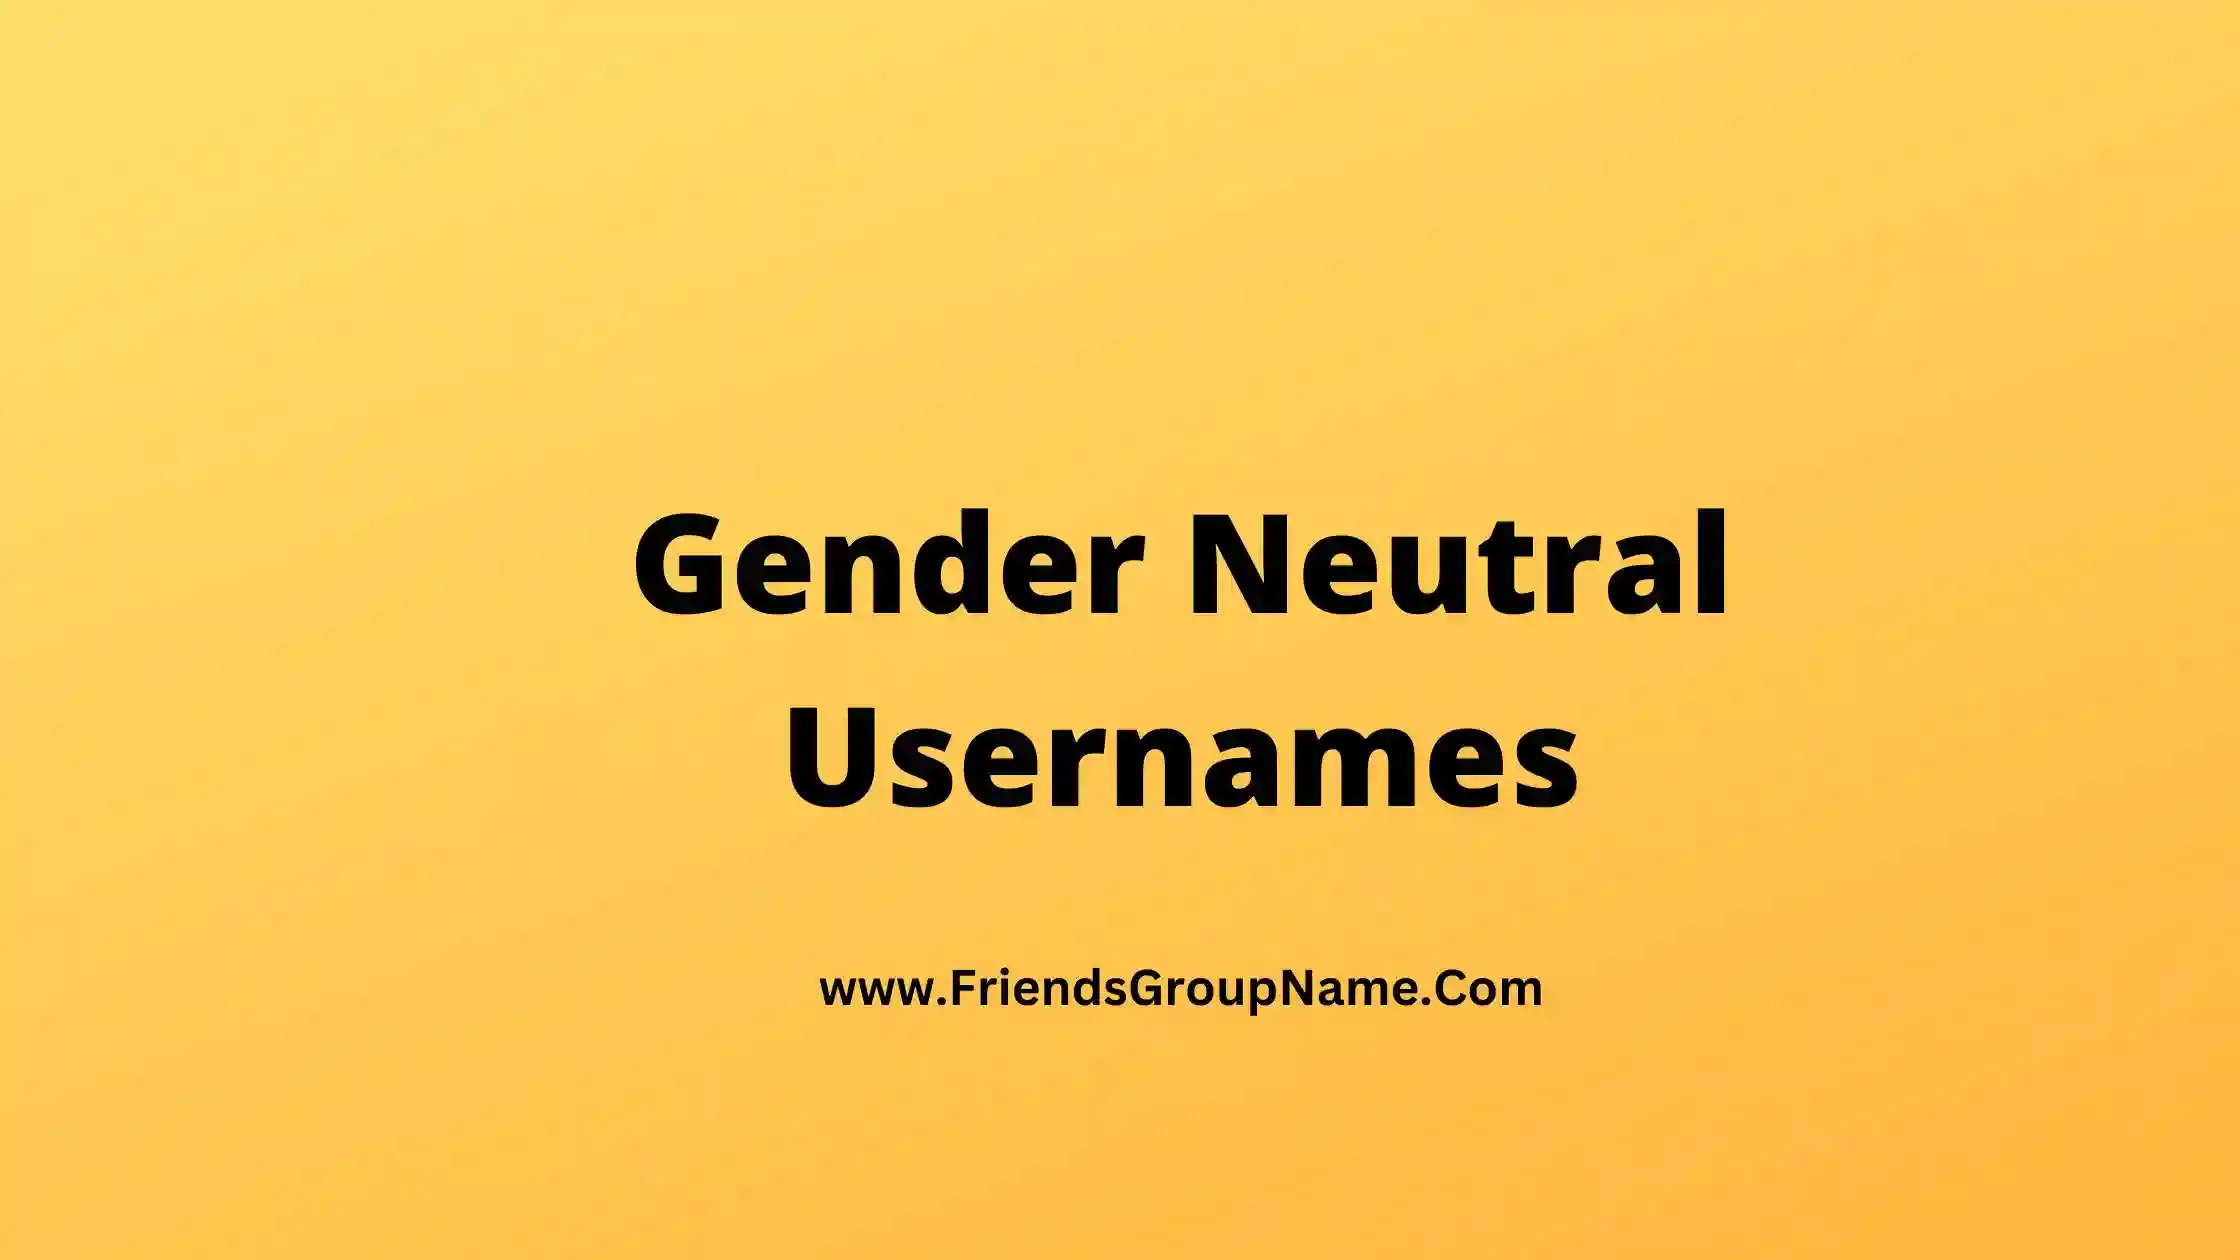 Gender Neutral Usernames